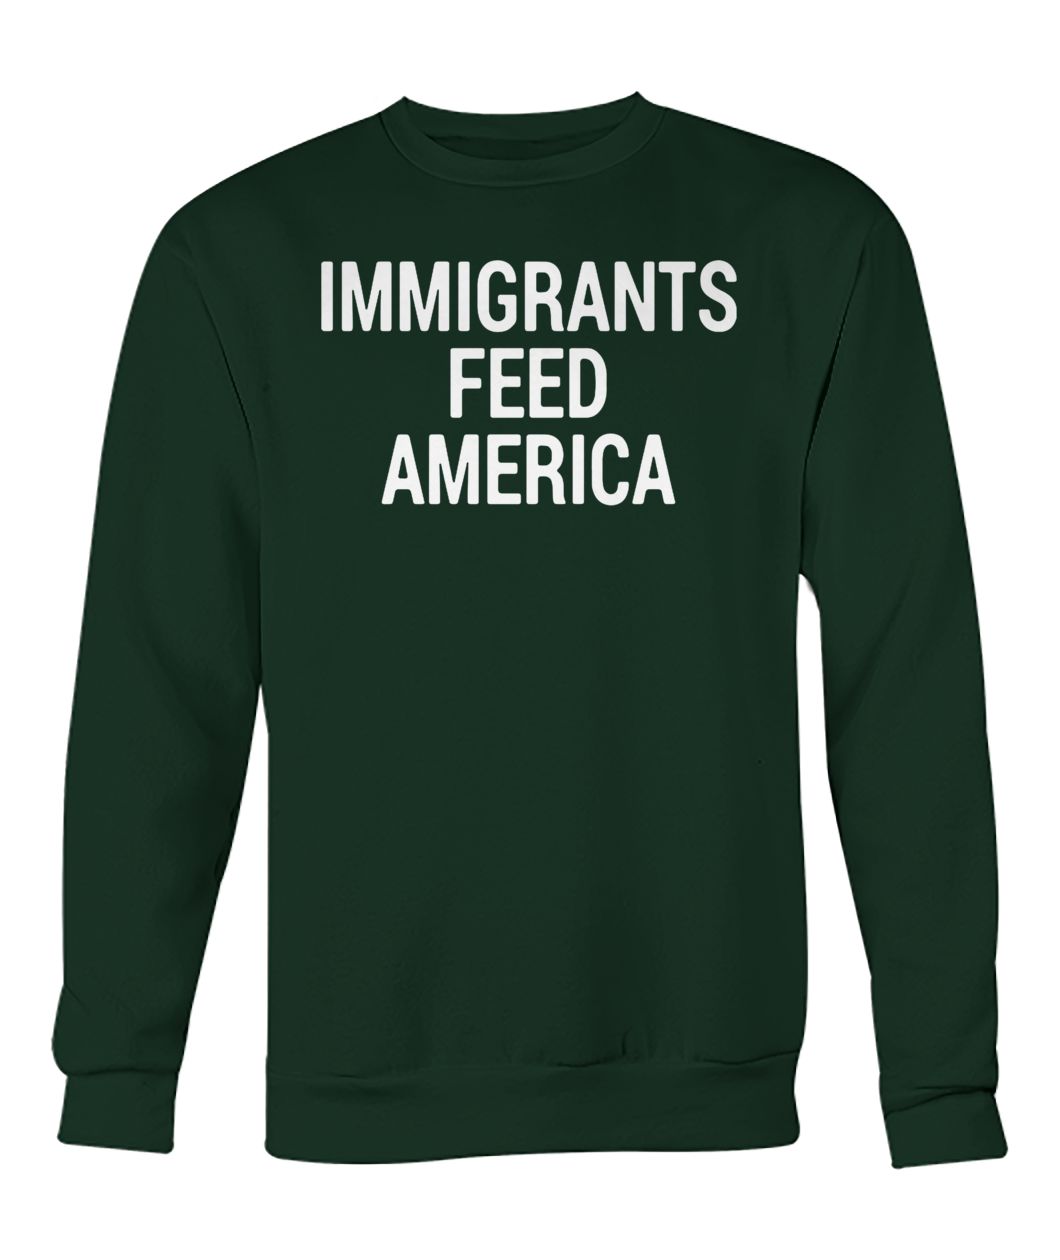 Make america great again immigrants feed america crew neck sweatshirt